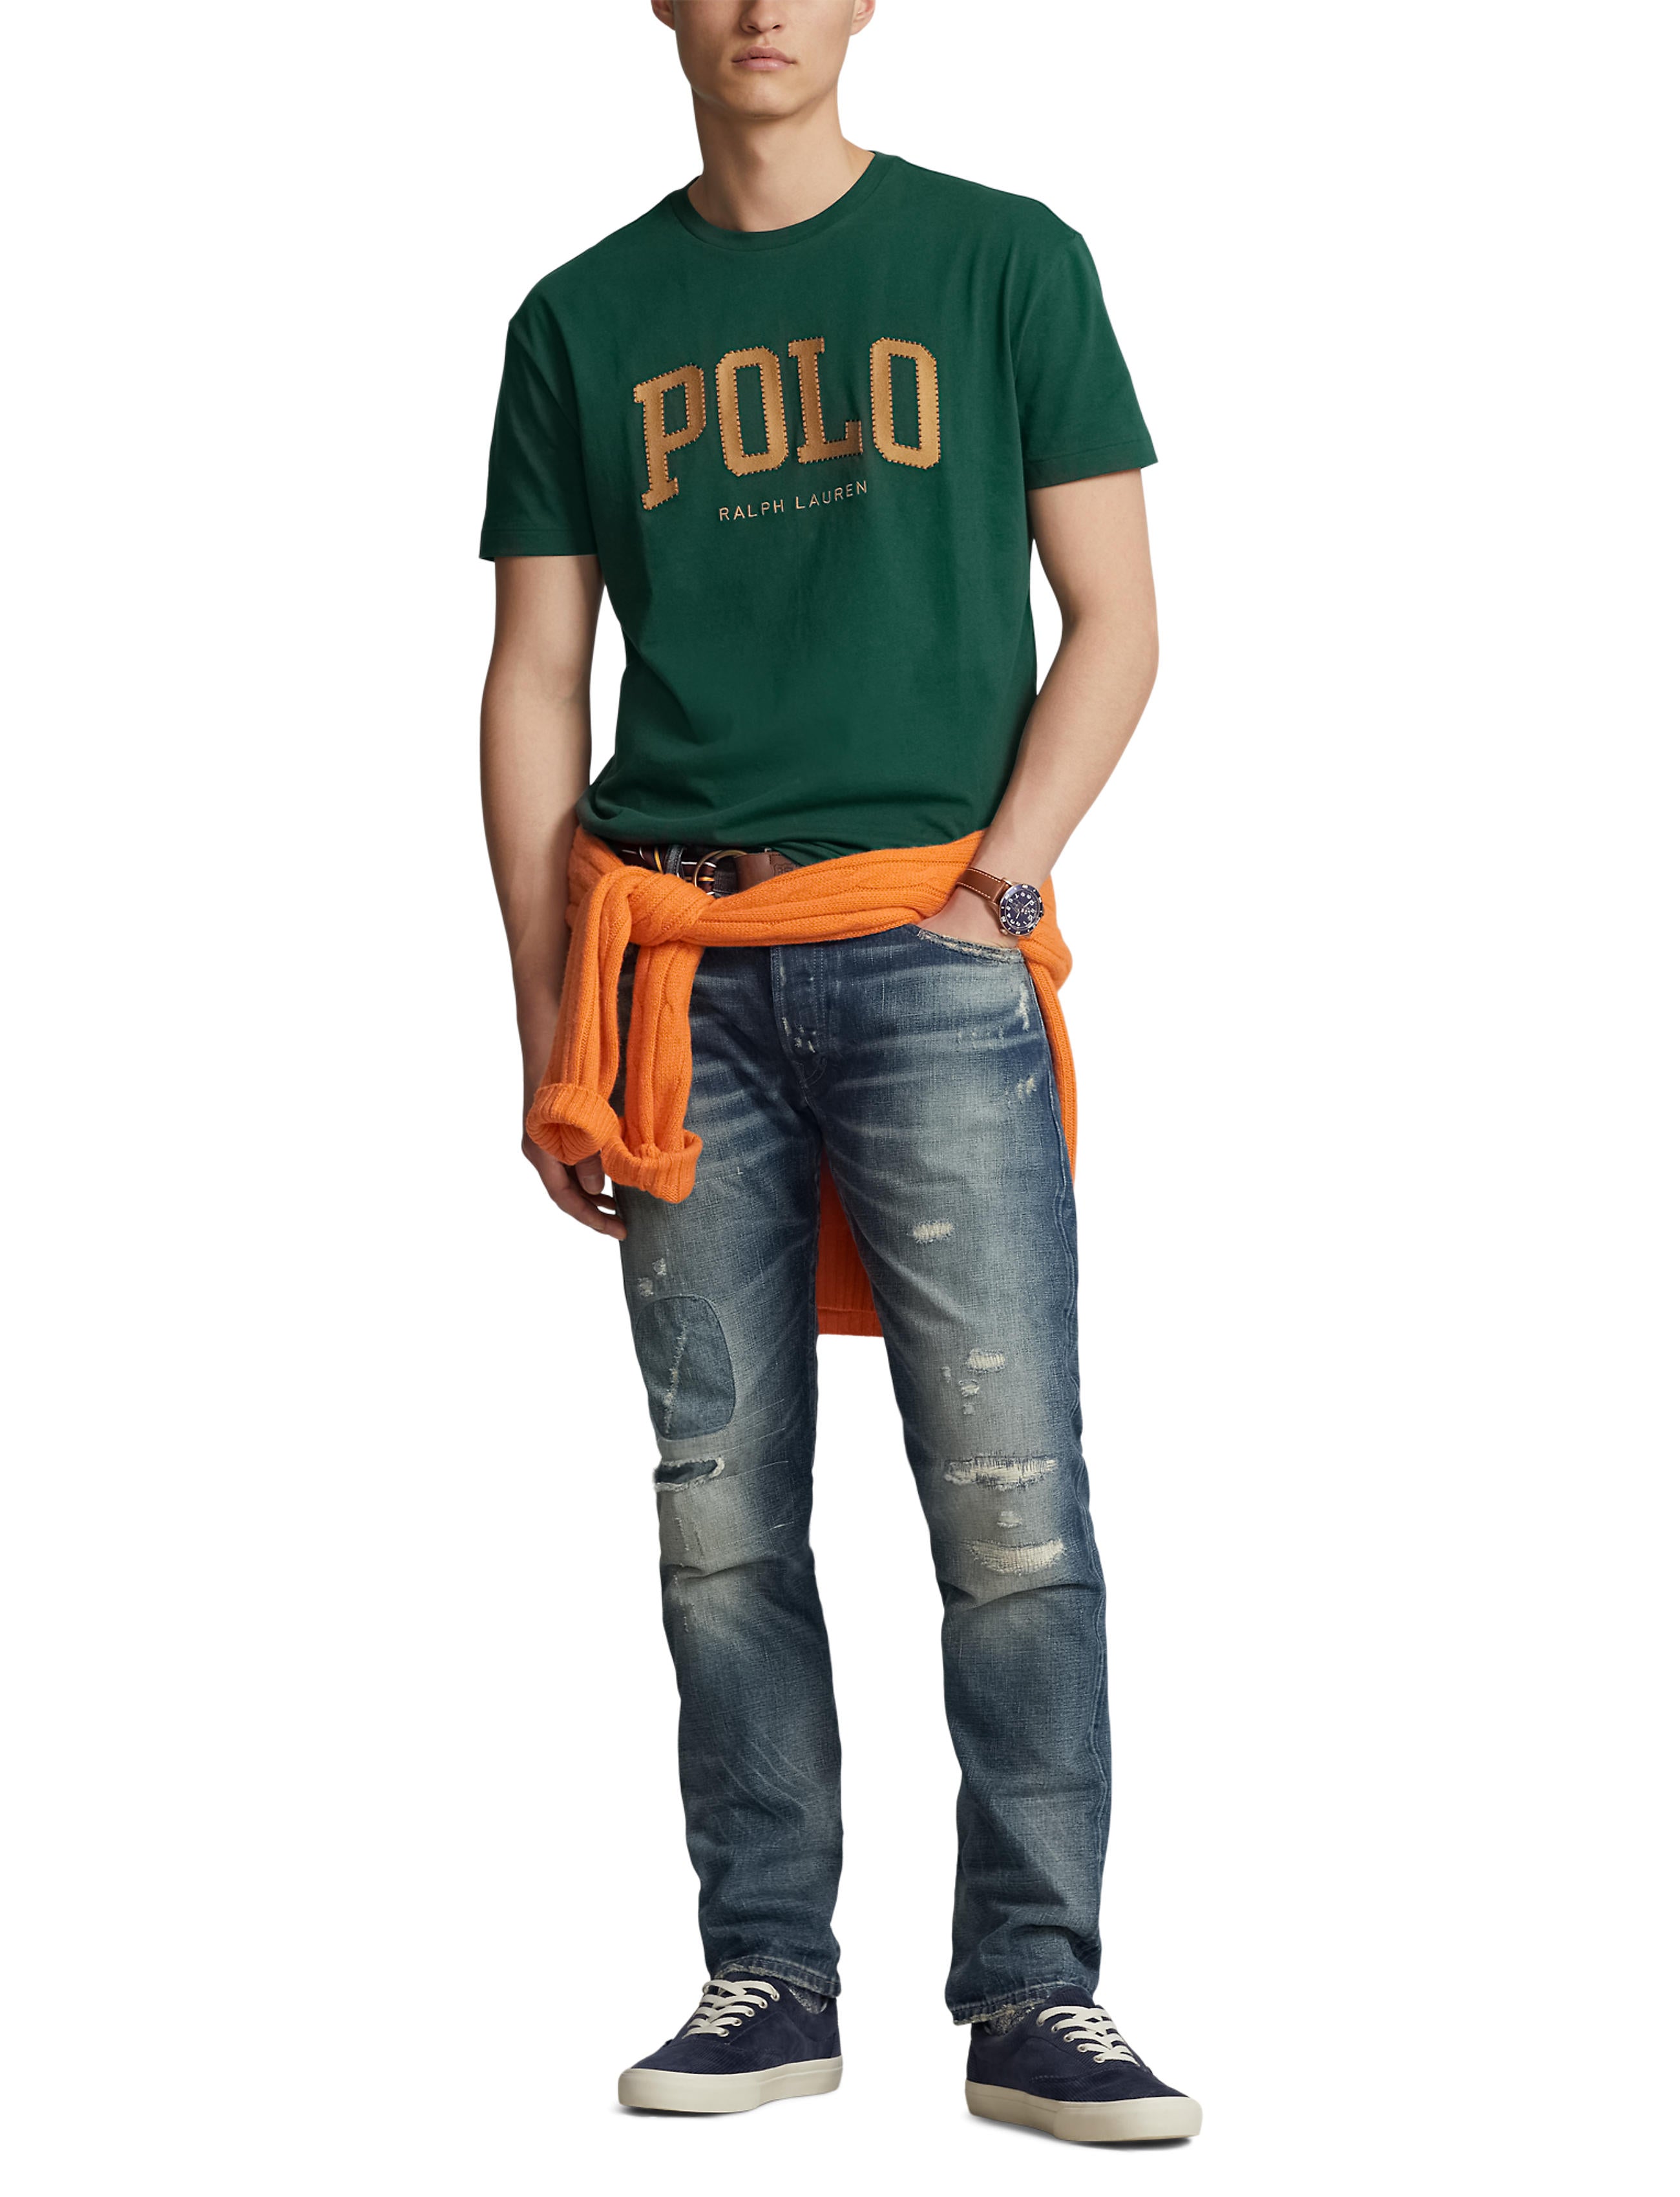 Polo Ralph Lauren Tee Shirt - Classics - Green